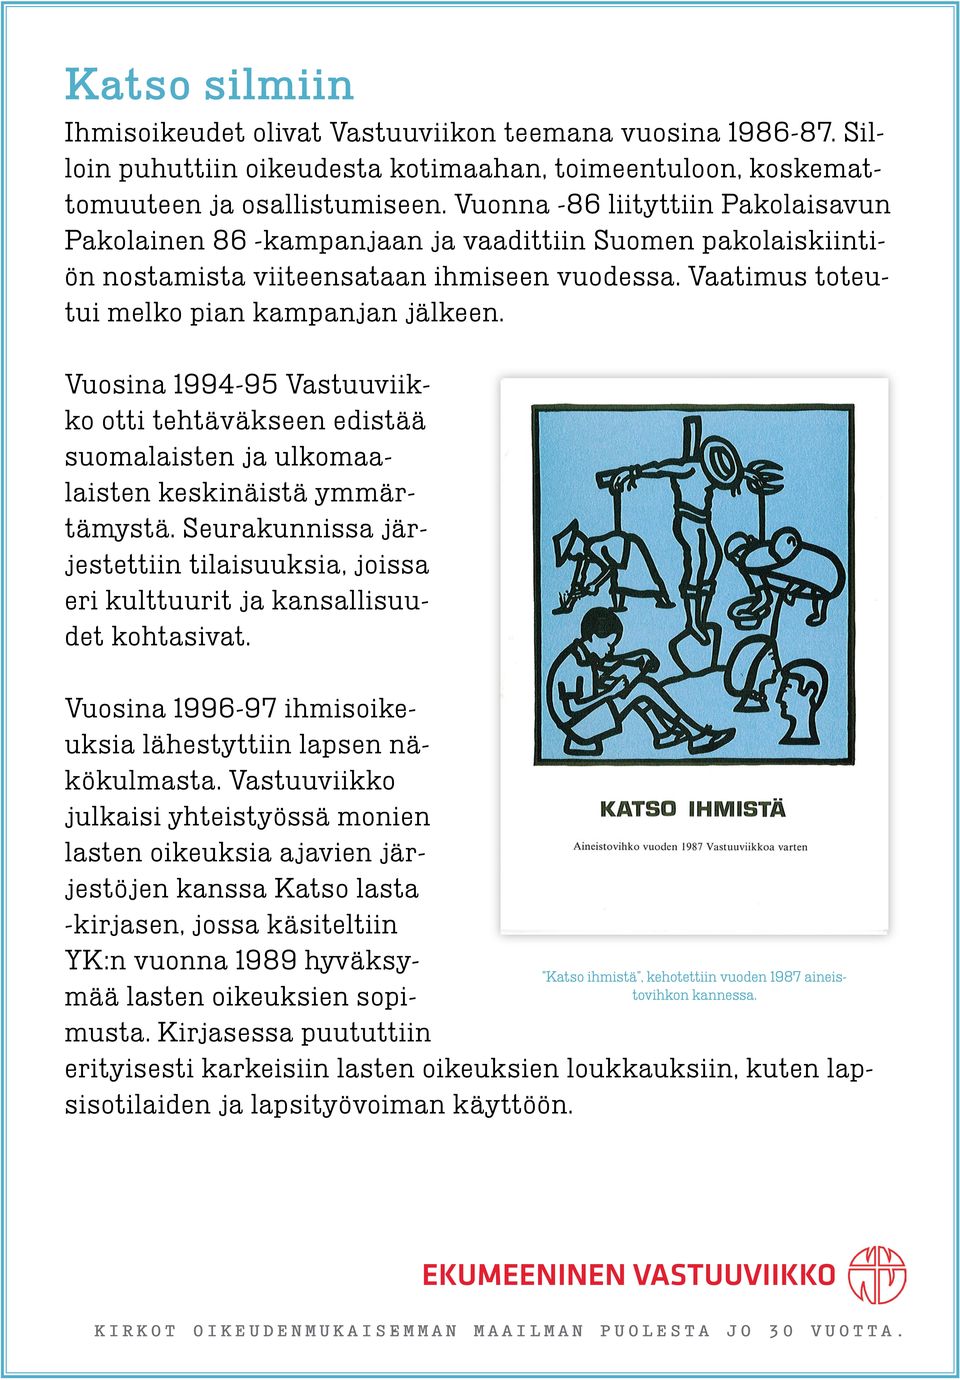 Vuosina 1994-95 Vastuuviikko otti tehtäväkseen edistää suomalaisten ja ulkomaalaisten keskinäistä ymmärtämystä.